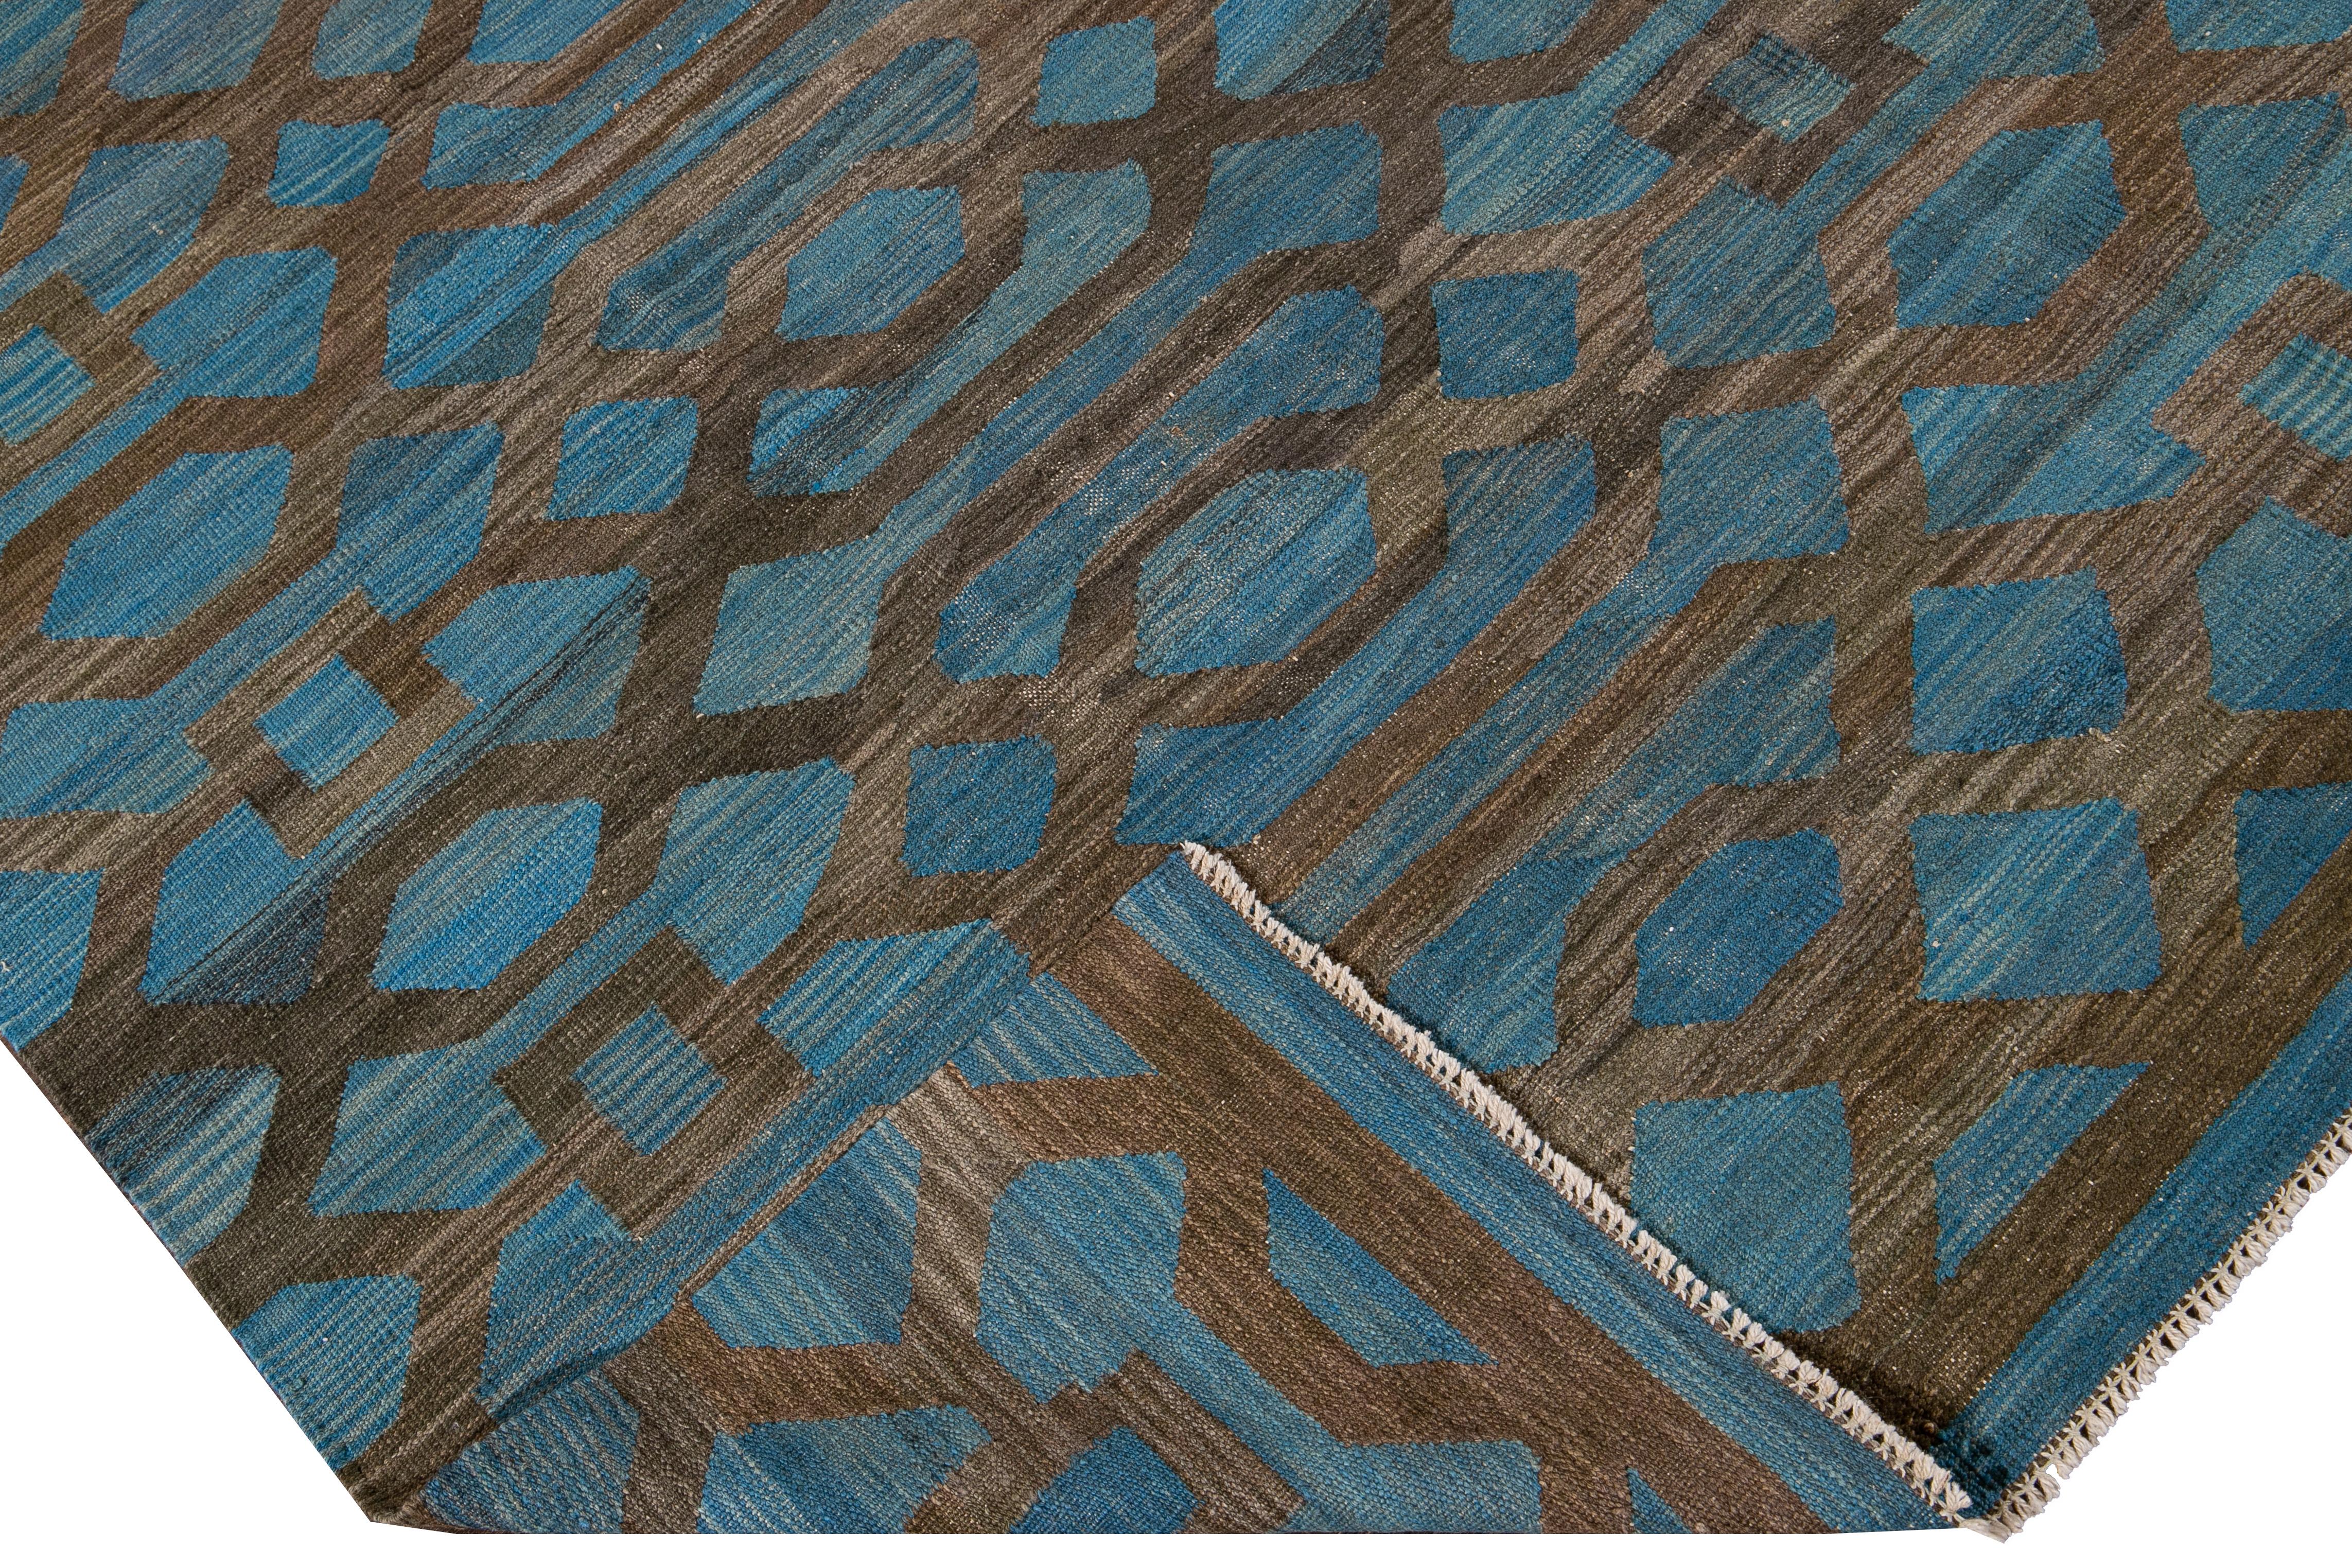 Schöner moderner flachgewebter Kilim-Teppich aus handgefertigter Wolle mit blauem Feld. Dieser Kilim-Teppich hat braune Akzente in einem wunderschönen geometrischen expressionistischen Design.

Dieser Teppich misst: 8'3